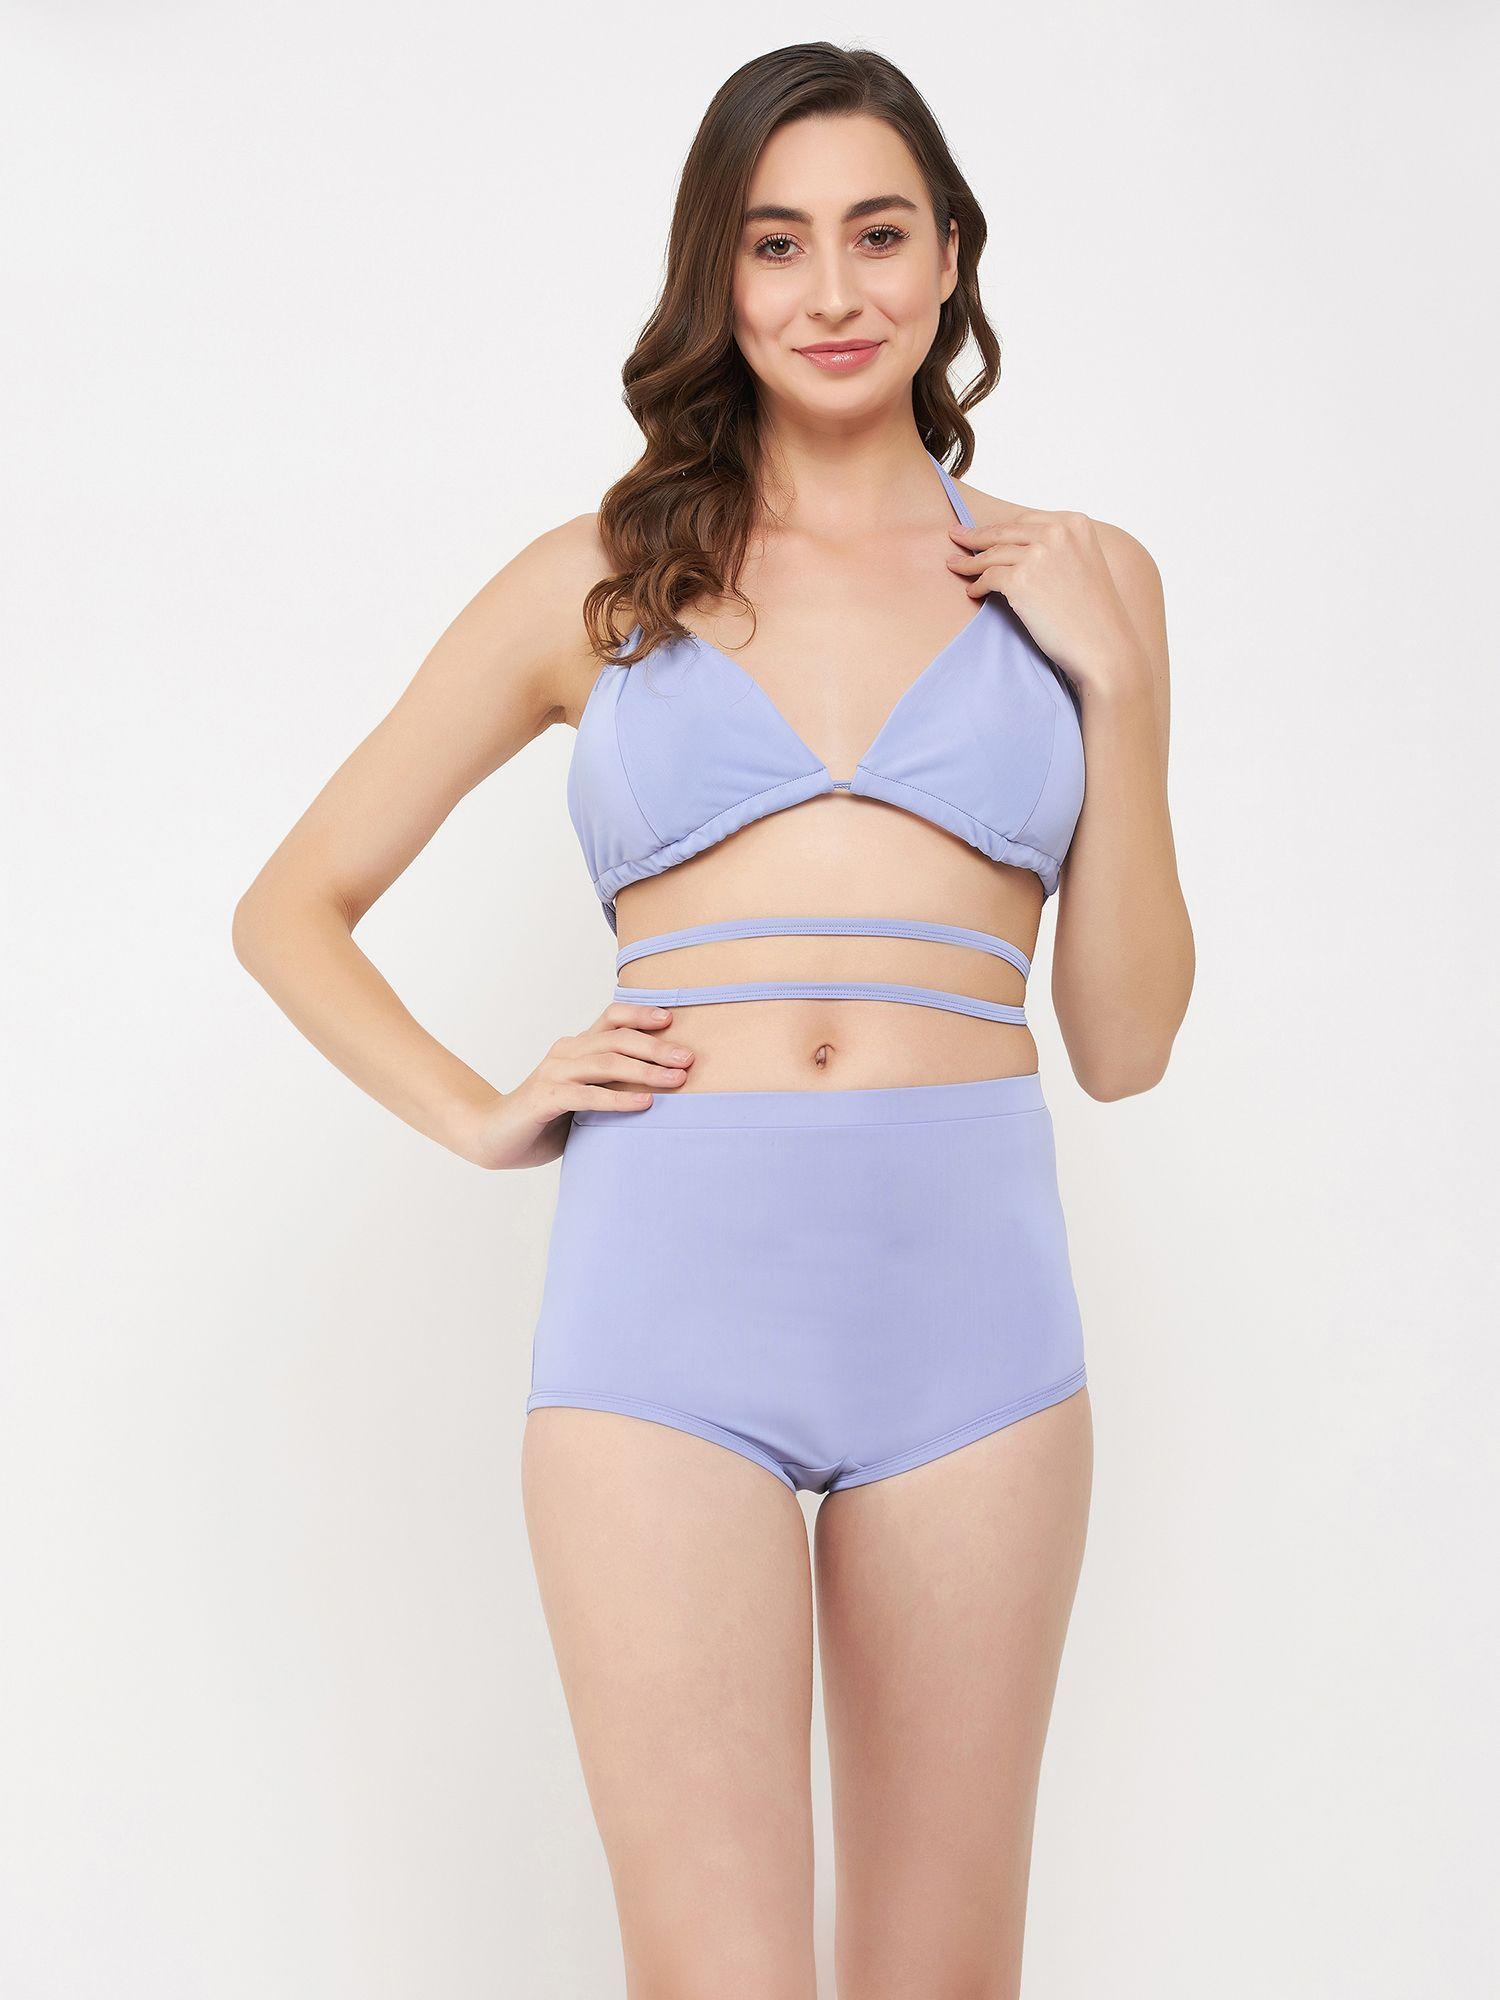 padded halter neck bikini top & high waist bikini bottoms in lilac